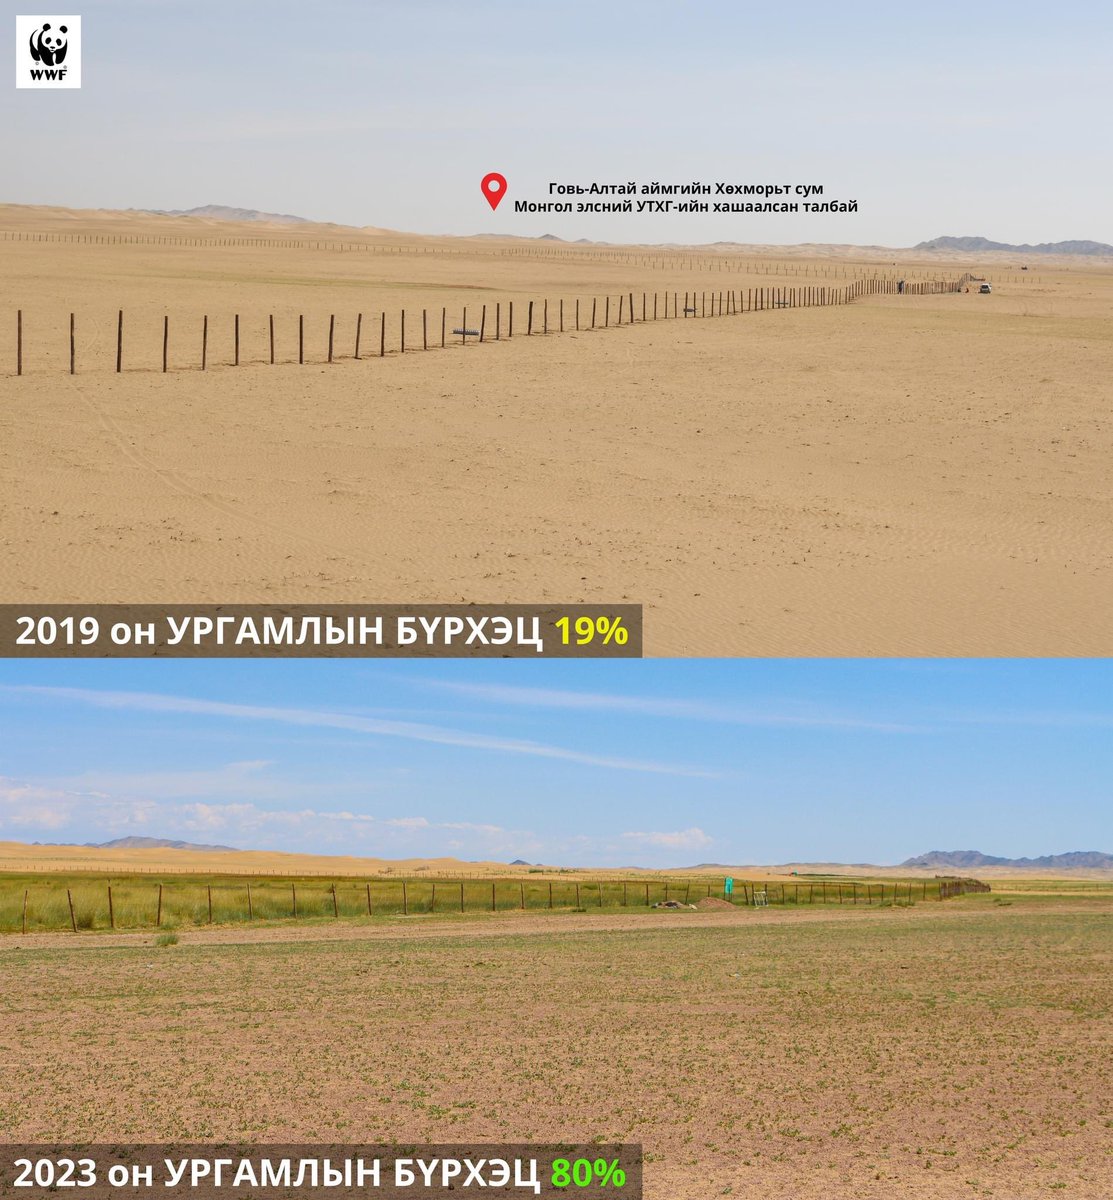 👆 Та 5 жилийн өмнөх ба одоог харьцуулсан зургийг харж байна. 
Монгол элсний УТХГ-тай хамтран элсний нүүдлээс хамгаалах хашаа татсанаар байгалийн ургамал өөрөөрөө сэргэн ургаж 5 жилийн өмнө 19-хэн хувьтай байсан ургамлын бүрхэц 80% болжээ. 👍👍👍
#WWFMongolia  #ASER